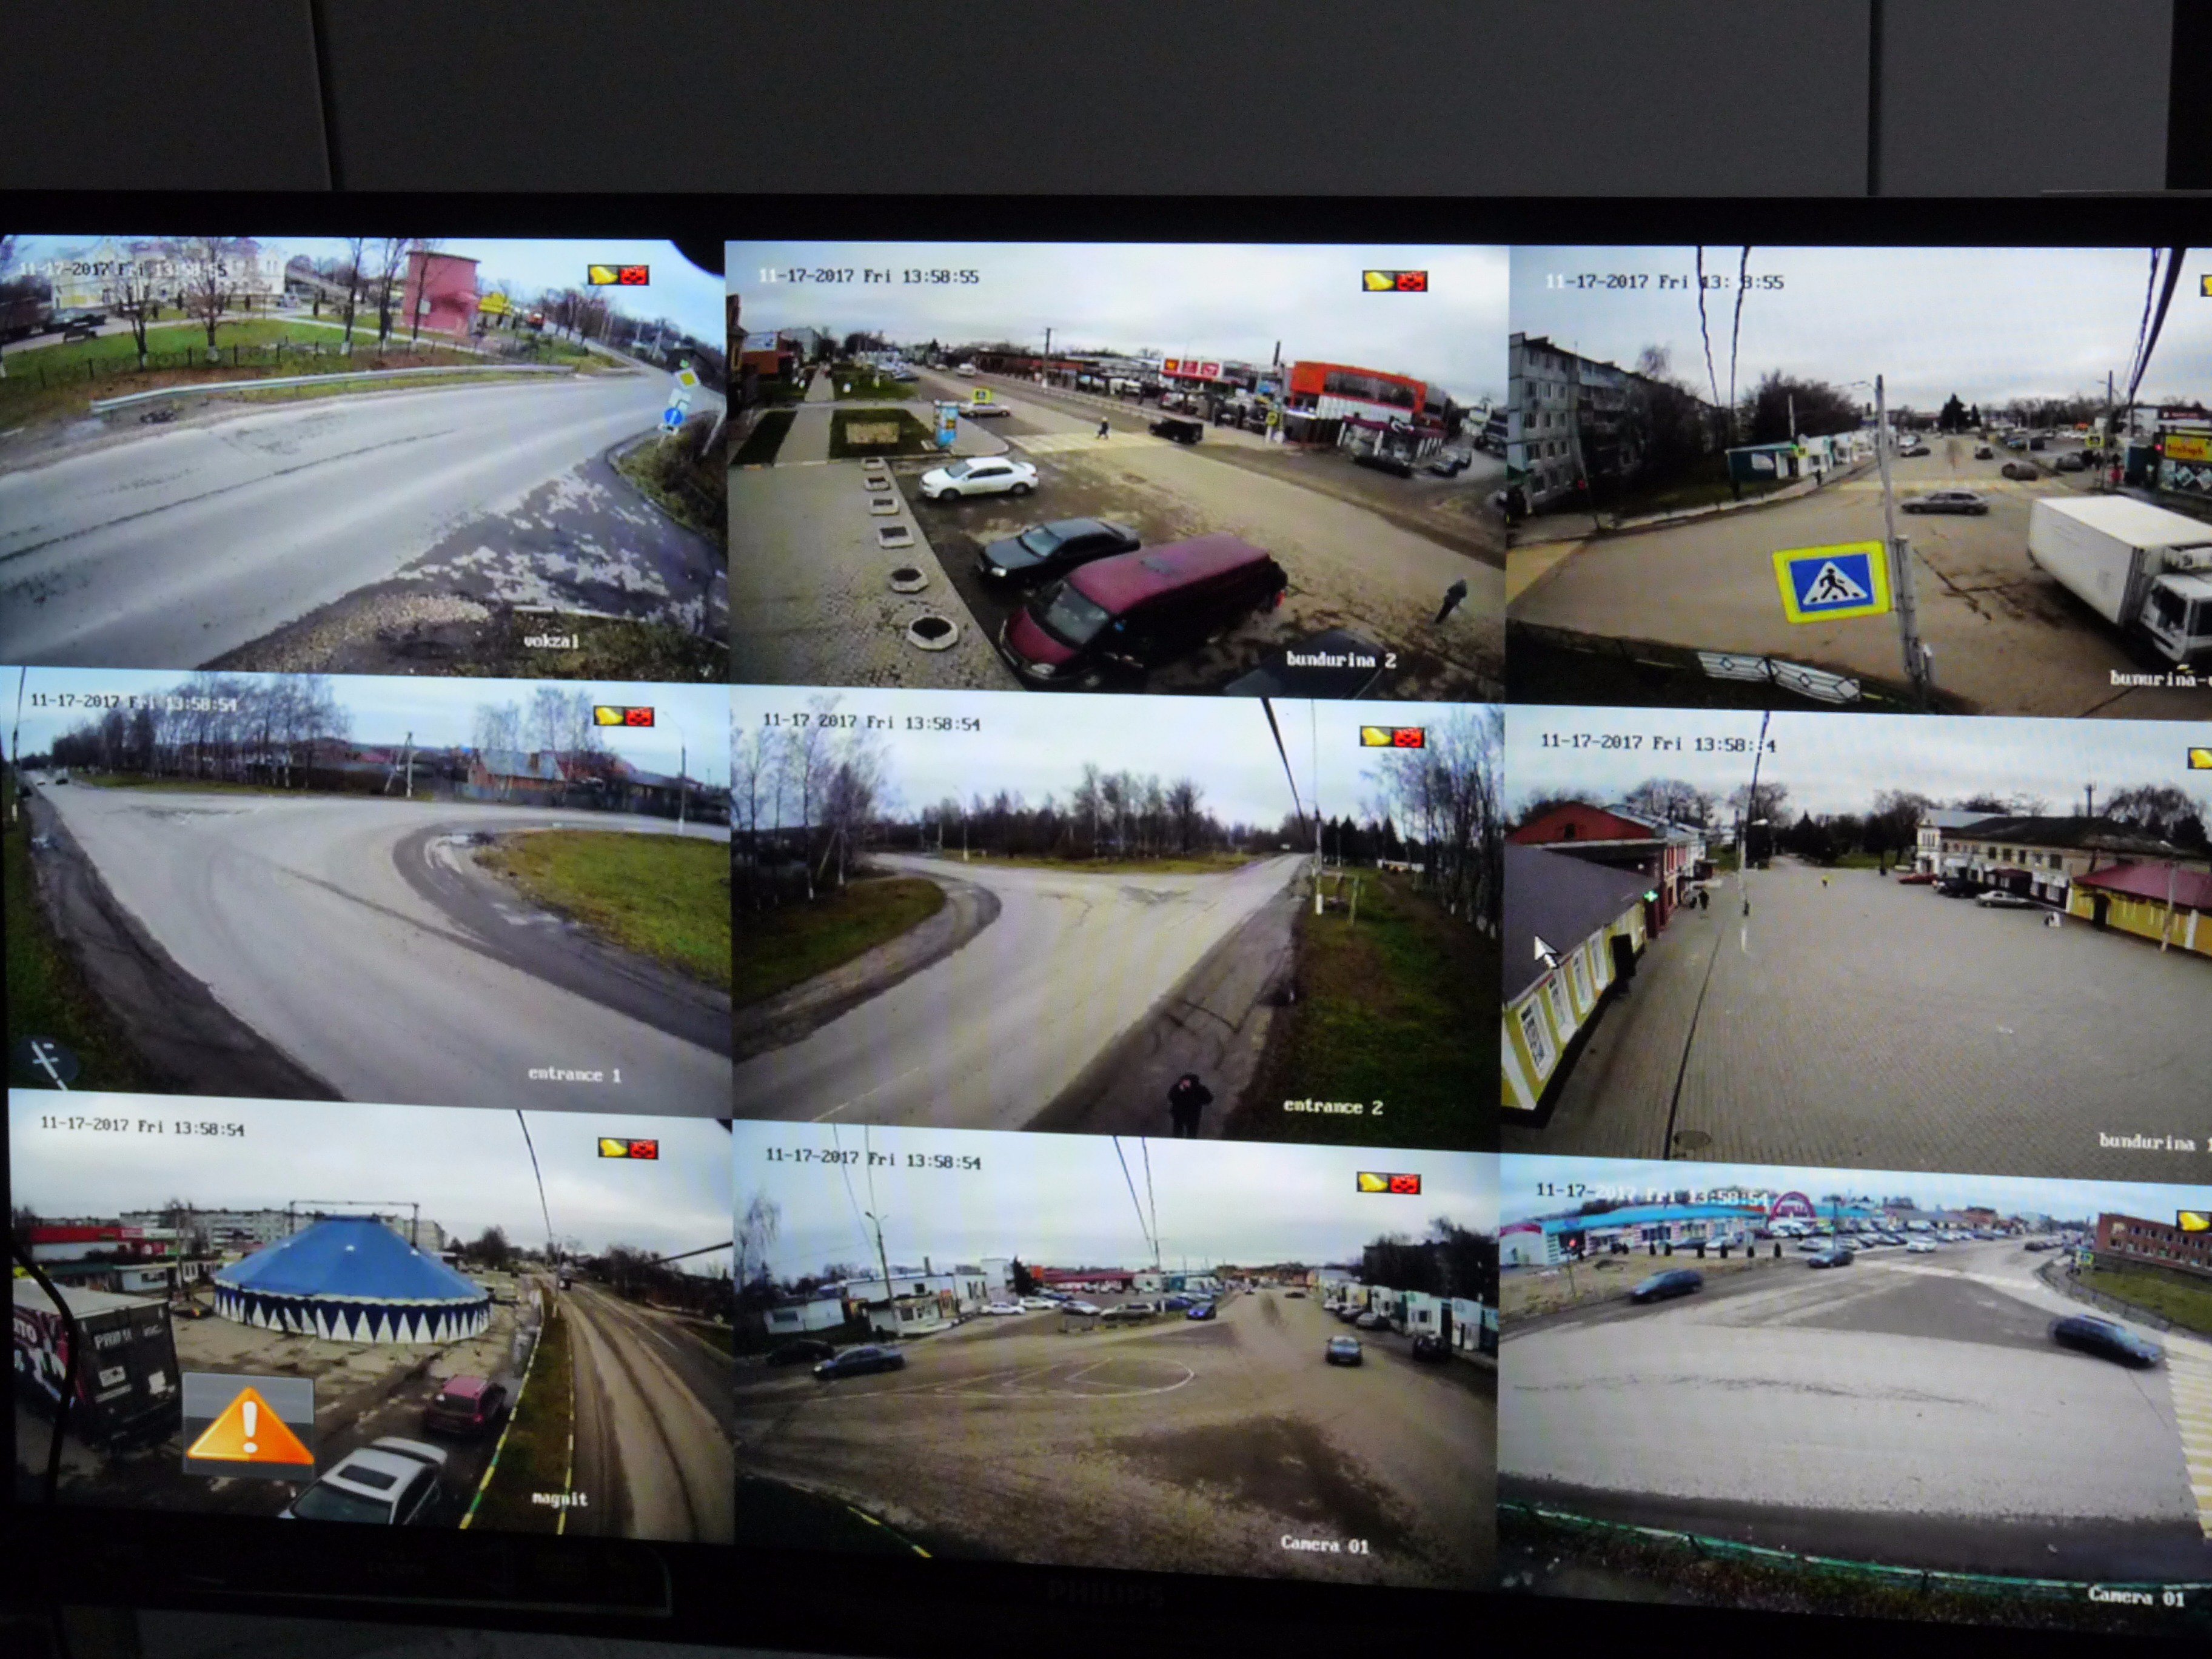 Трансляция web камеры. Изображение с камеры видеонаблюдения. Экран видеонаблюдения. Экран камеры наблюдения.